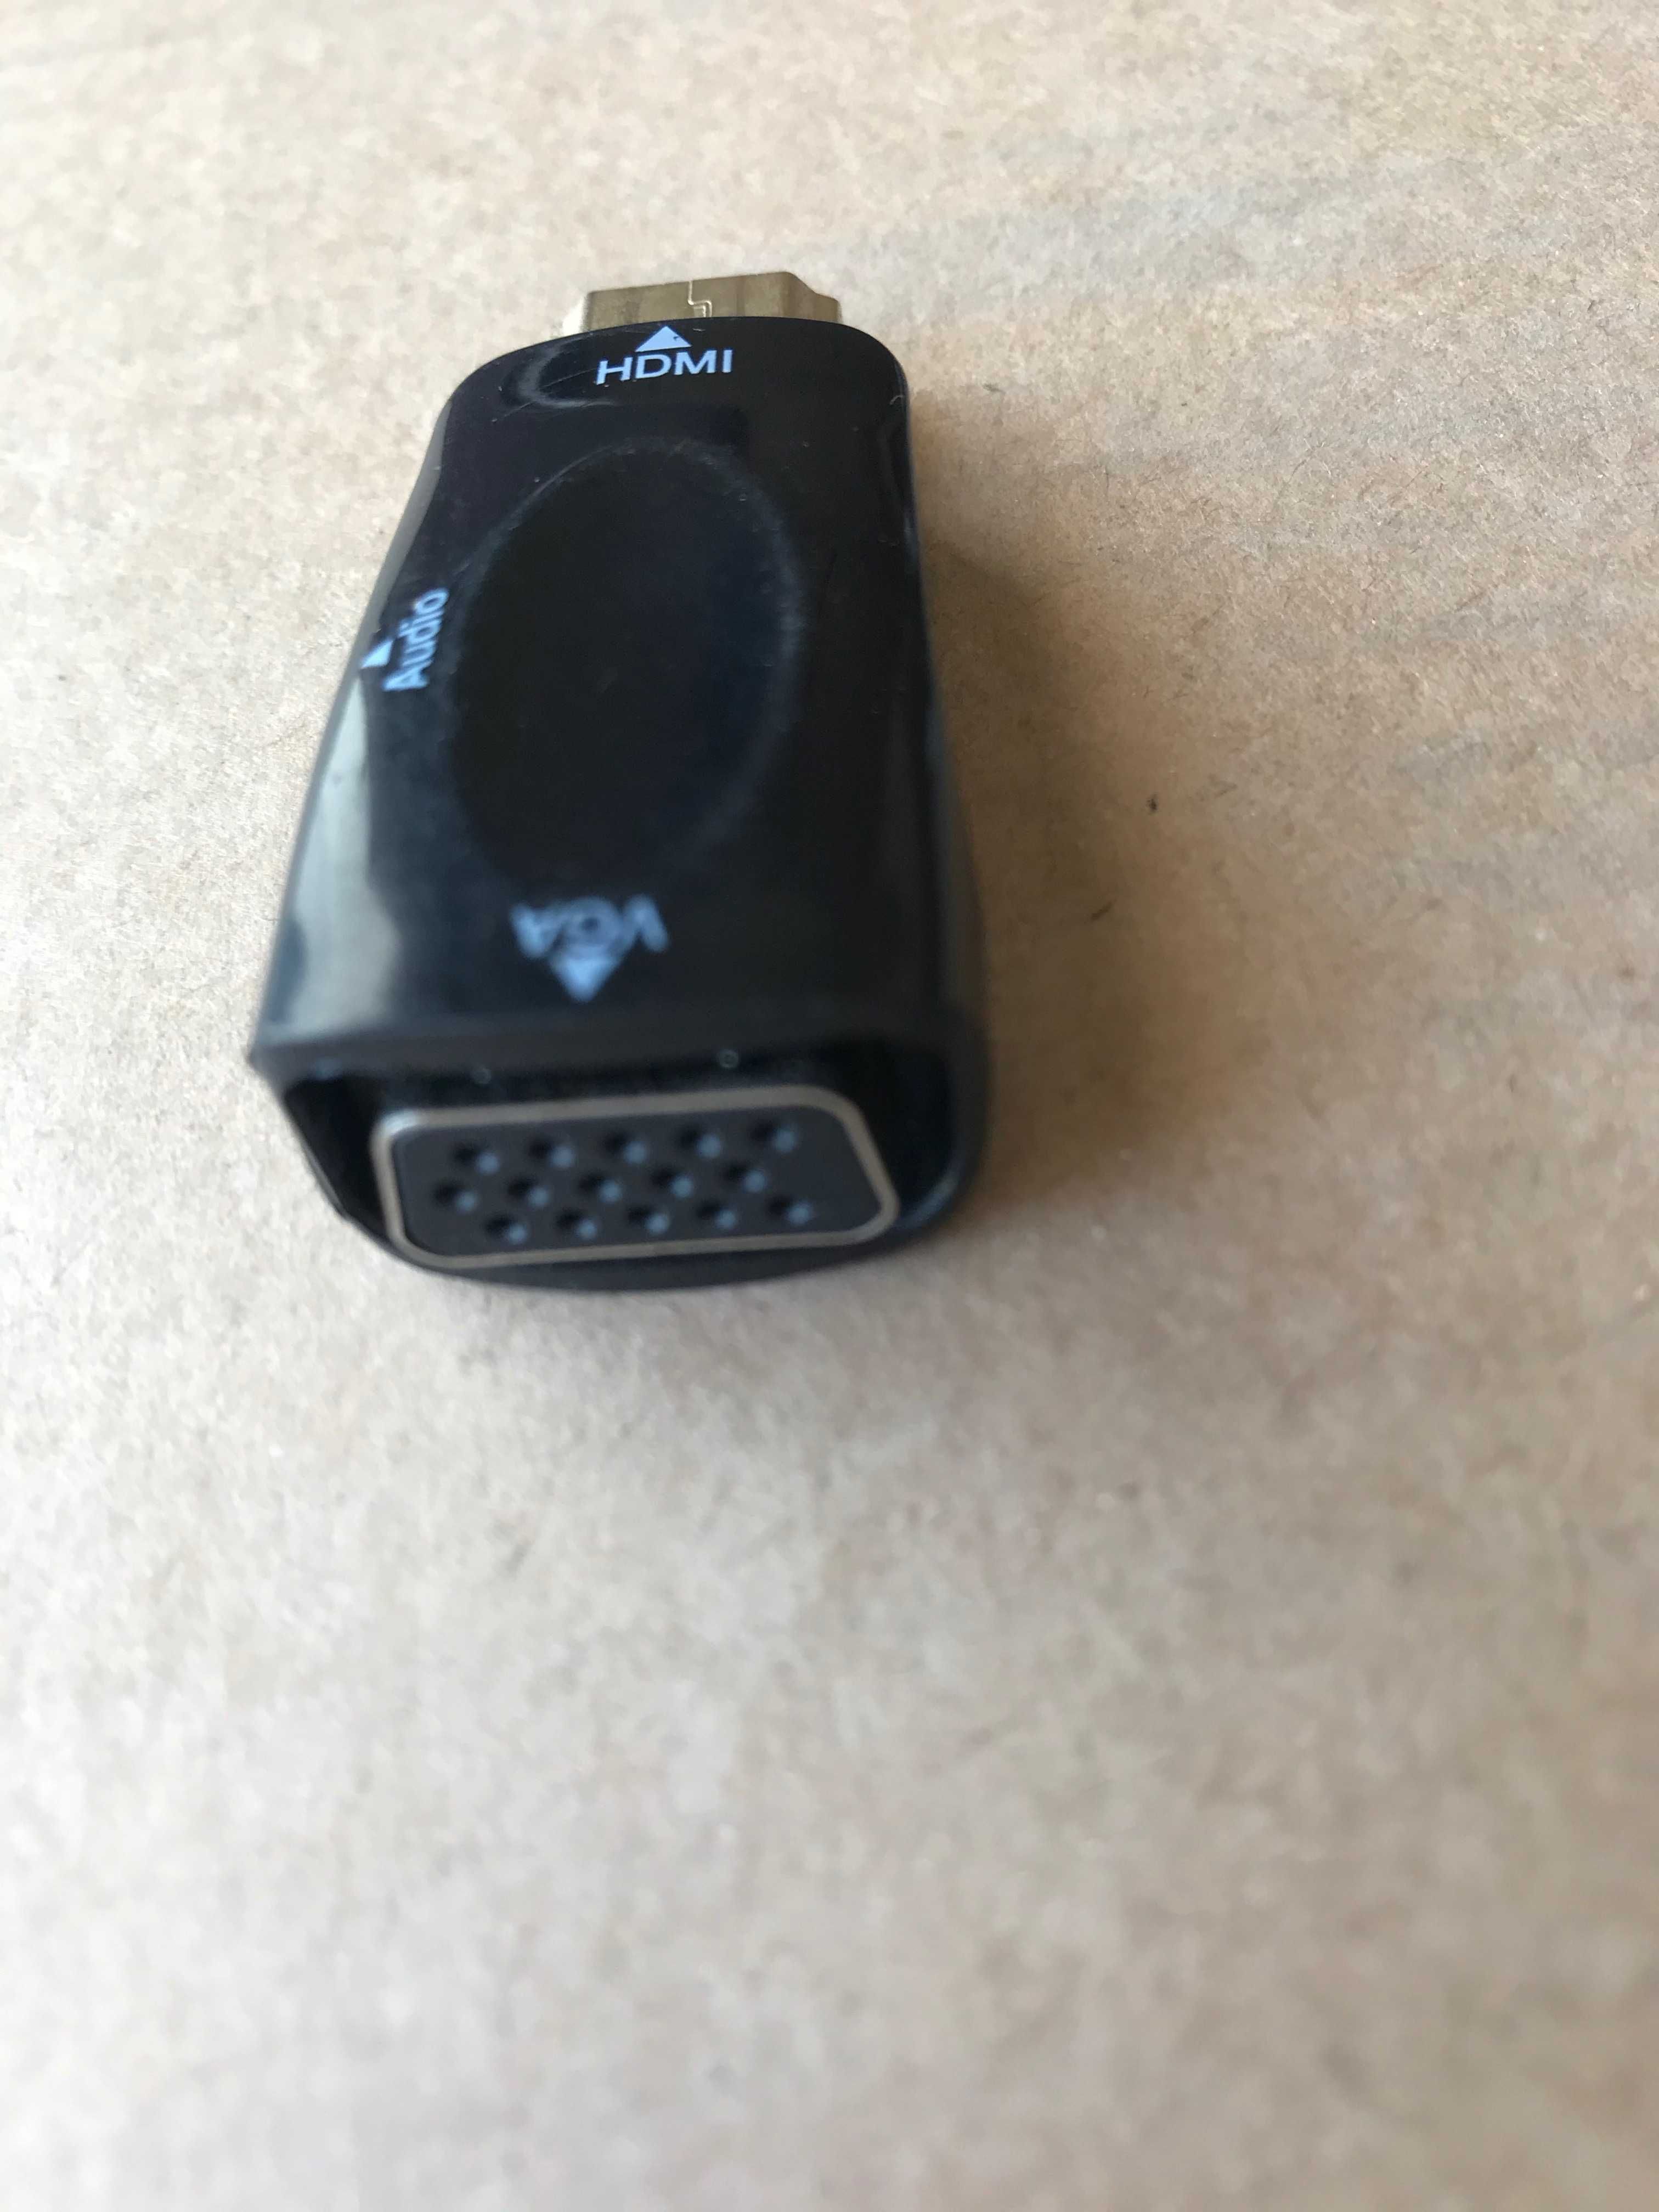 Conversor HDMI para VGA (para ligar a monitor pela entrada VGA)